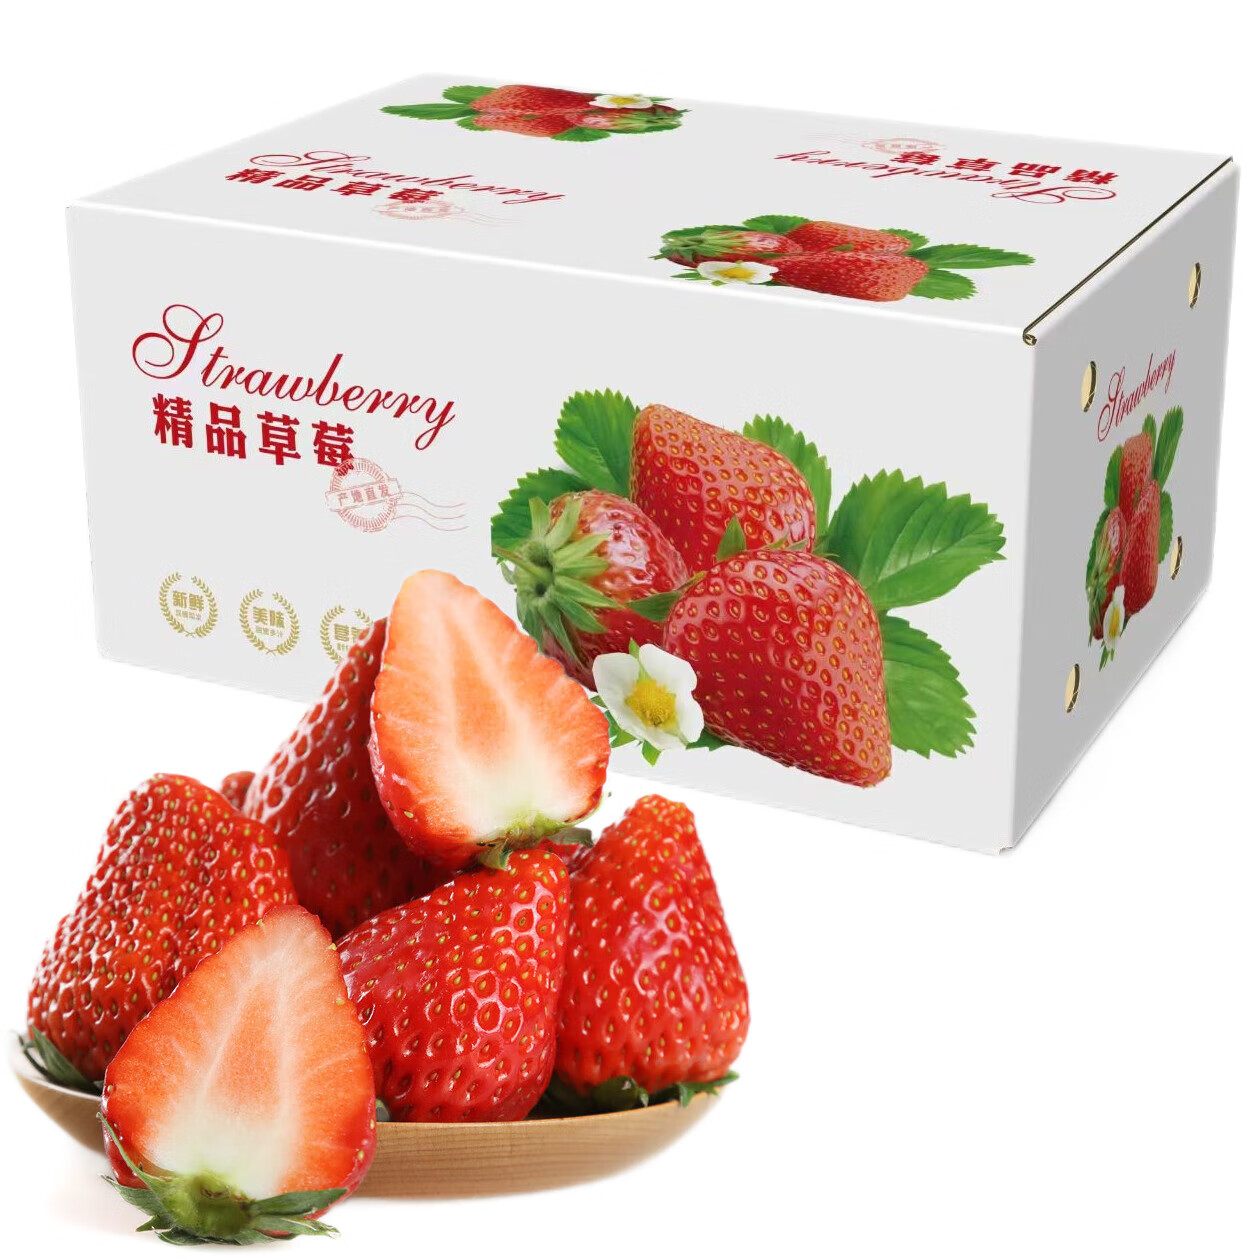 京鲜到 四川大凉山红颜奶油草莓 5斤中果彩箱装 单果约12g起 源头直发 56.9元